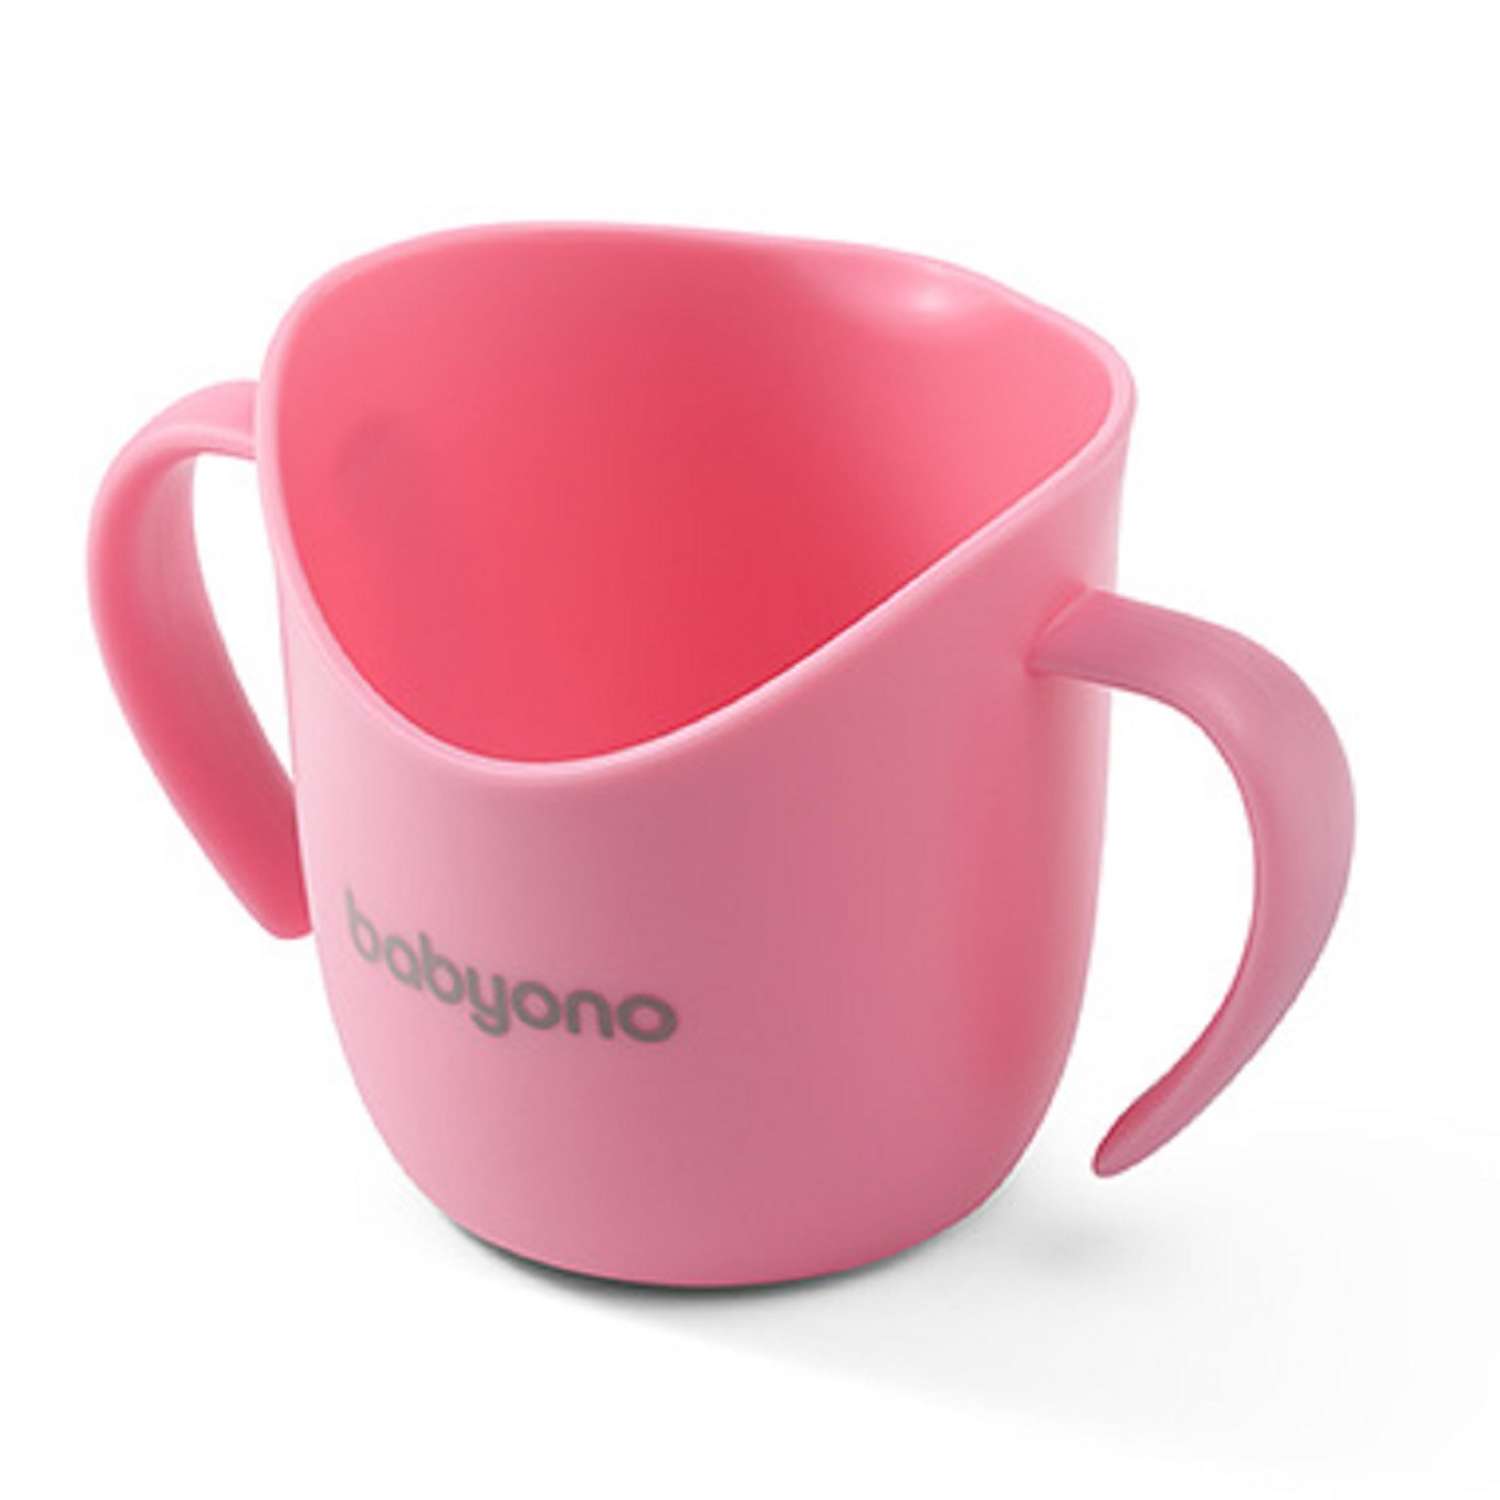 Кружечка Babyono эргономичная для самостоятельного питья FLOW Арт.1463/04 розовая - фото 1